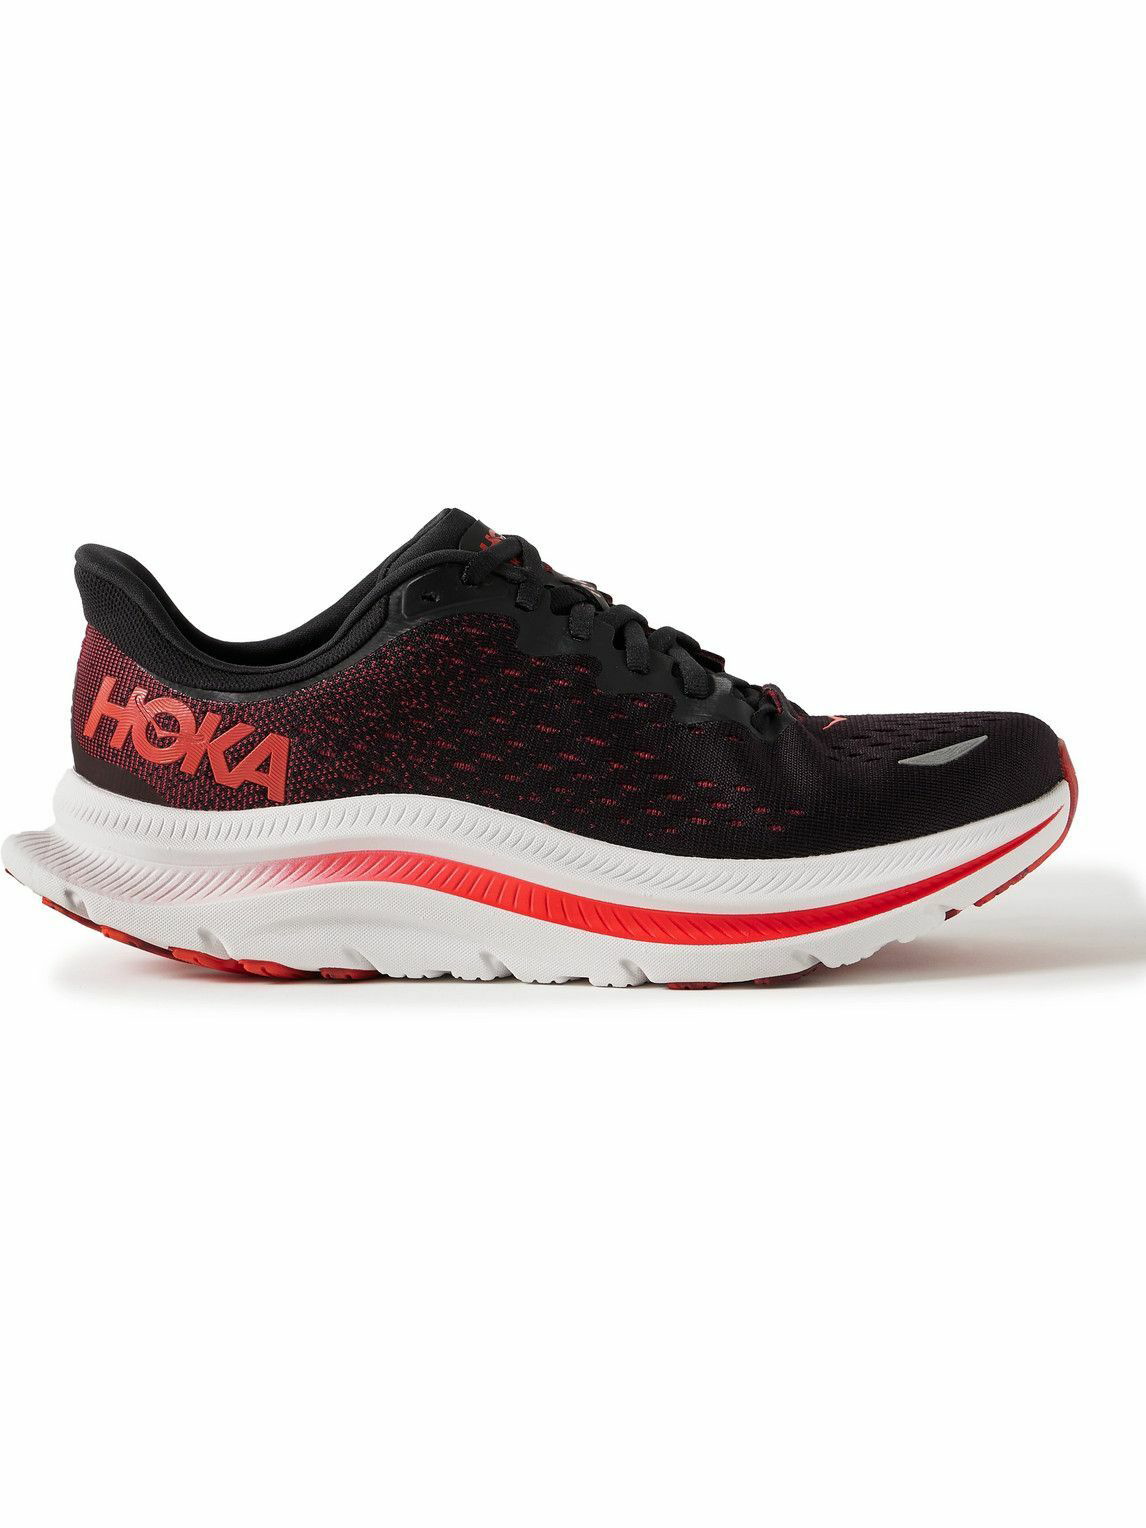 Hoka One One - Kawana Rubber-Trimmed Mesh Running Sneakers - Black Hoka ...